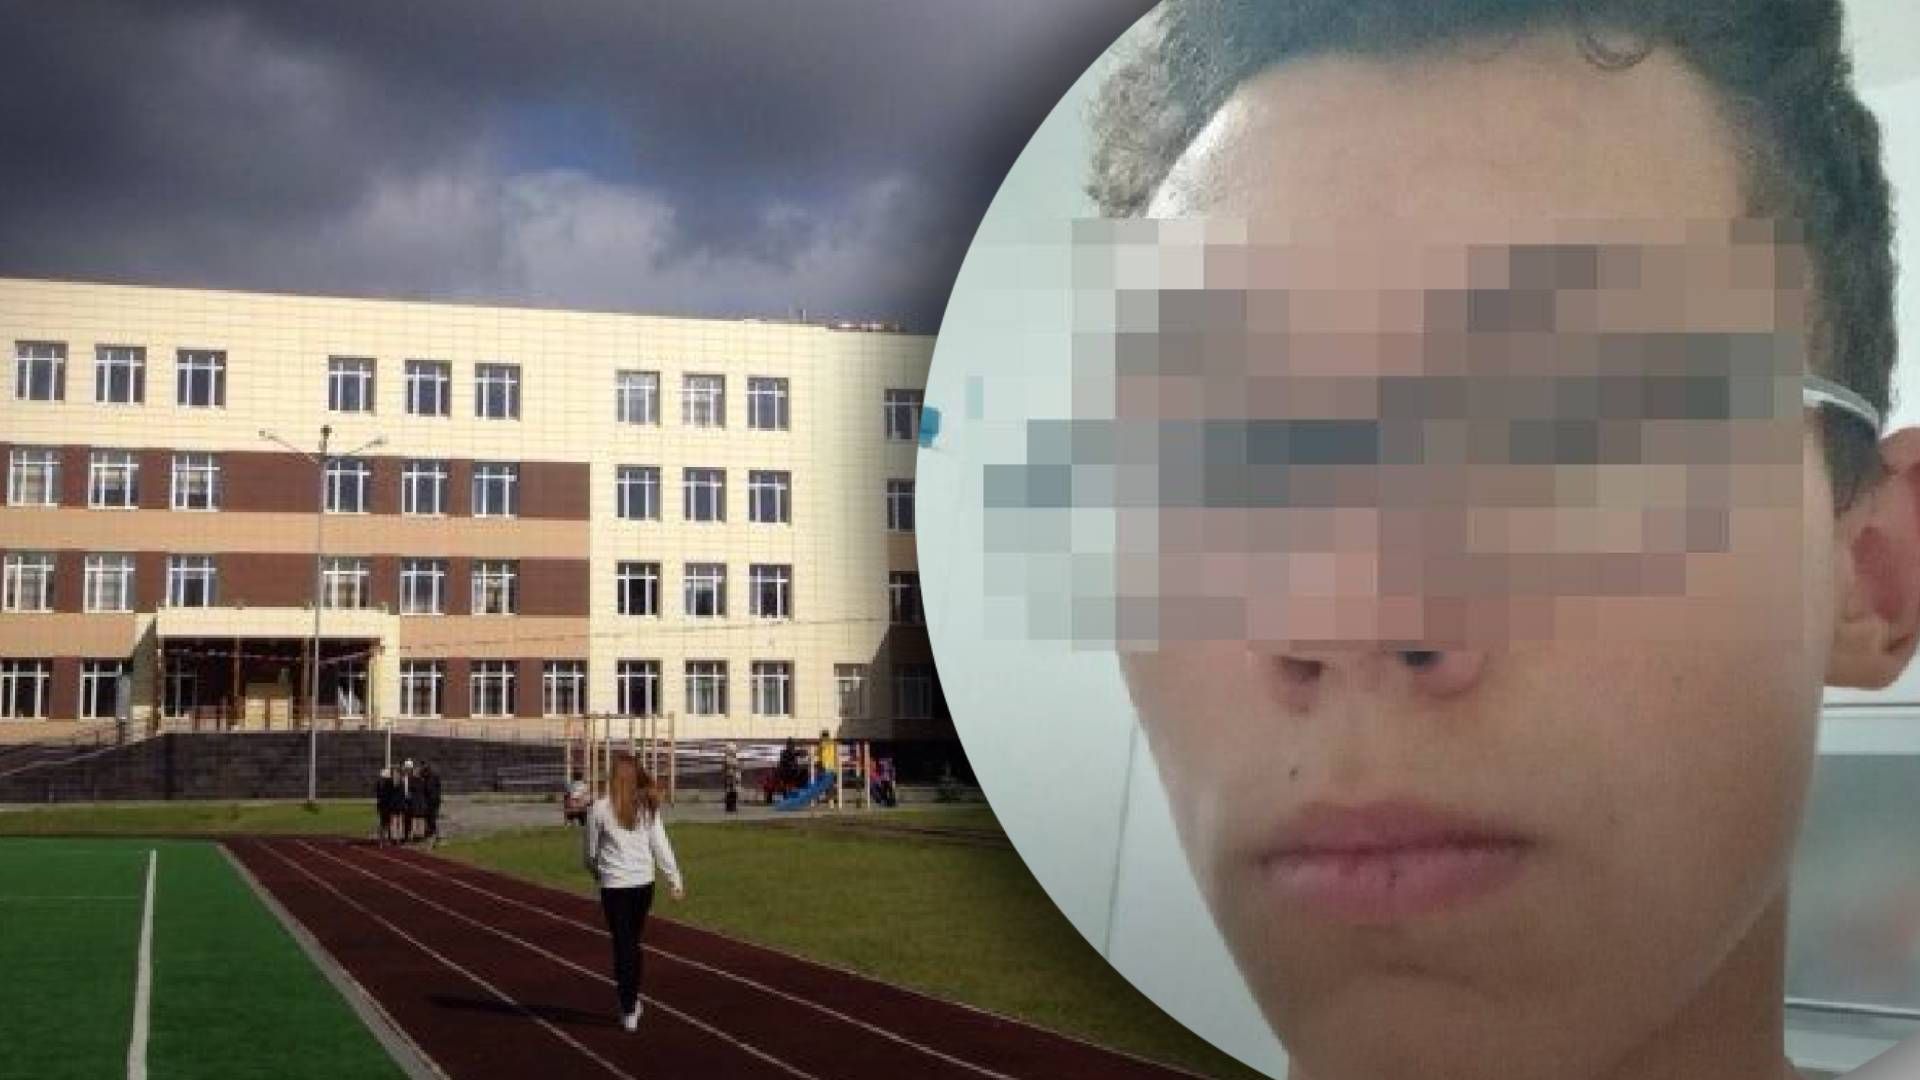 Хотел истреблять одноклассников: в России 14-летний подросток планировал кровавое нападение на школу